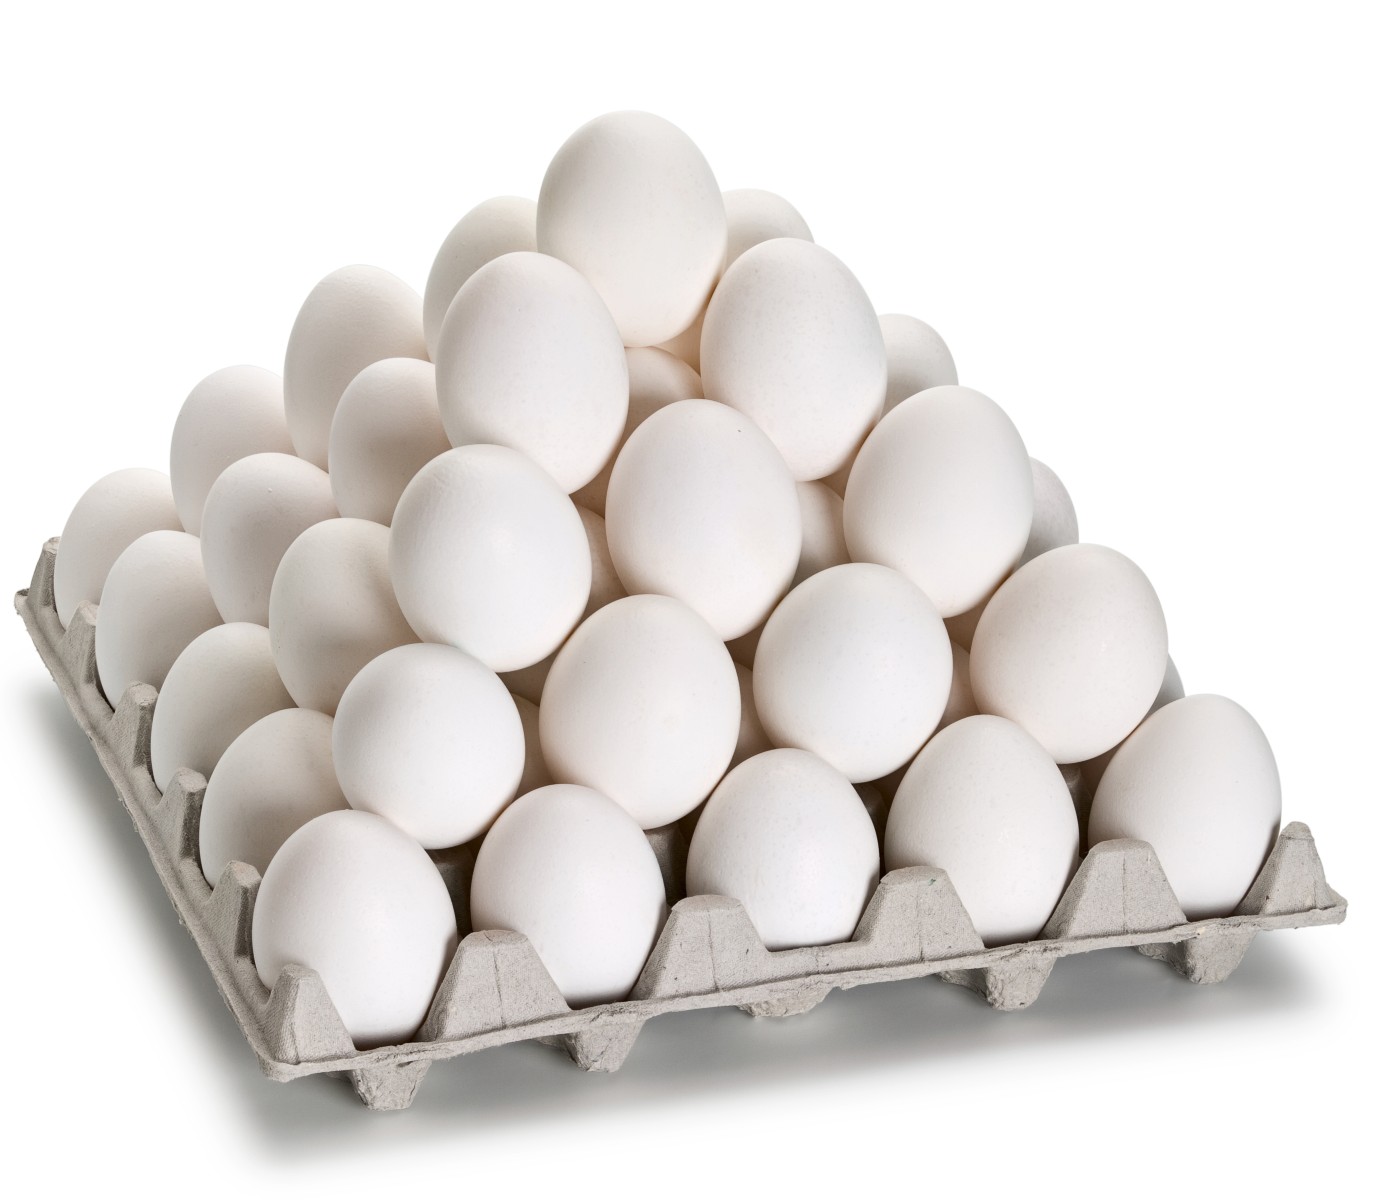 Avicultores mexicanos manifiestan su posición ante contrabando de huevos a EE.UU.